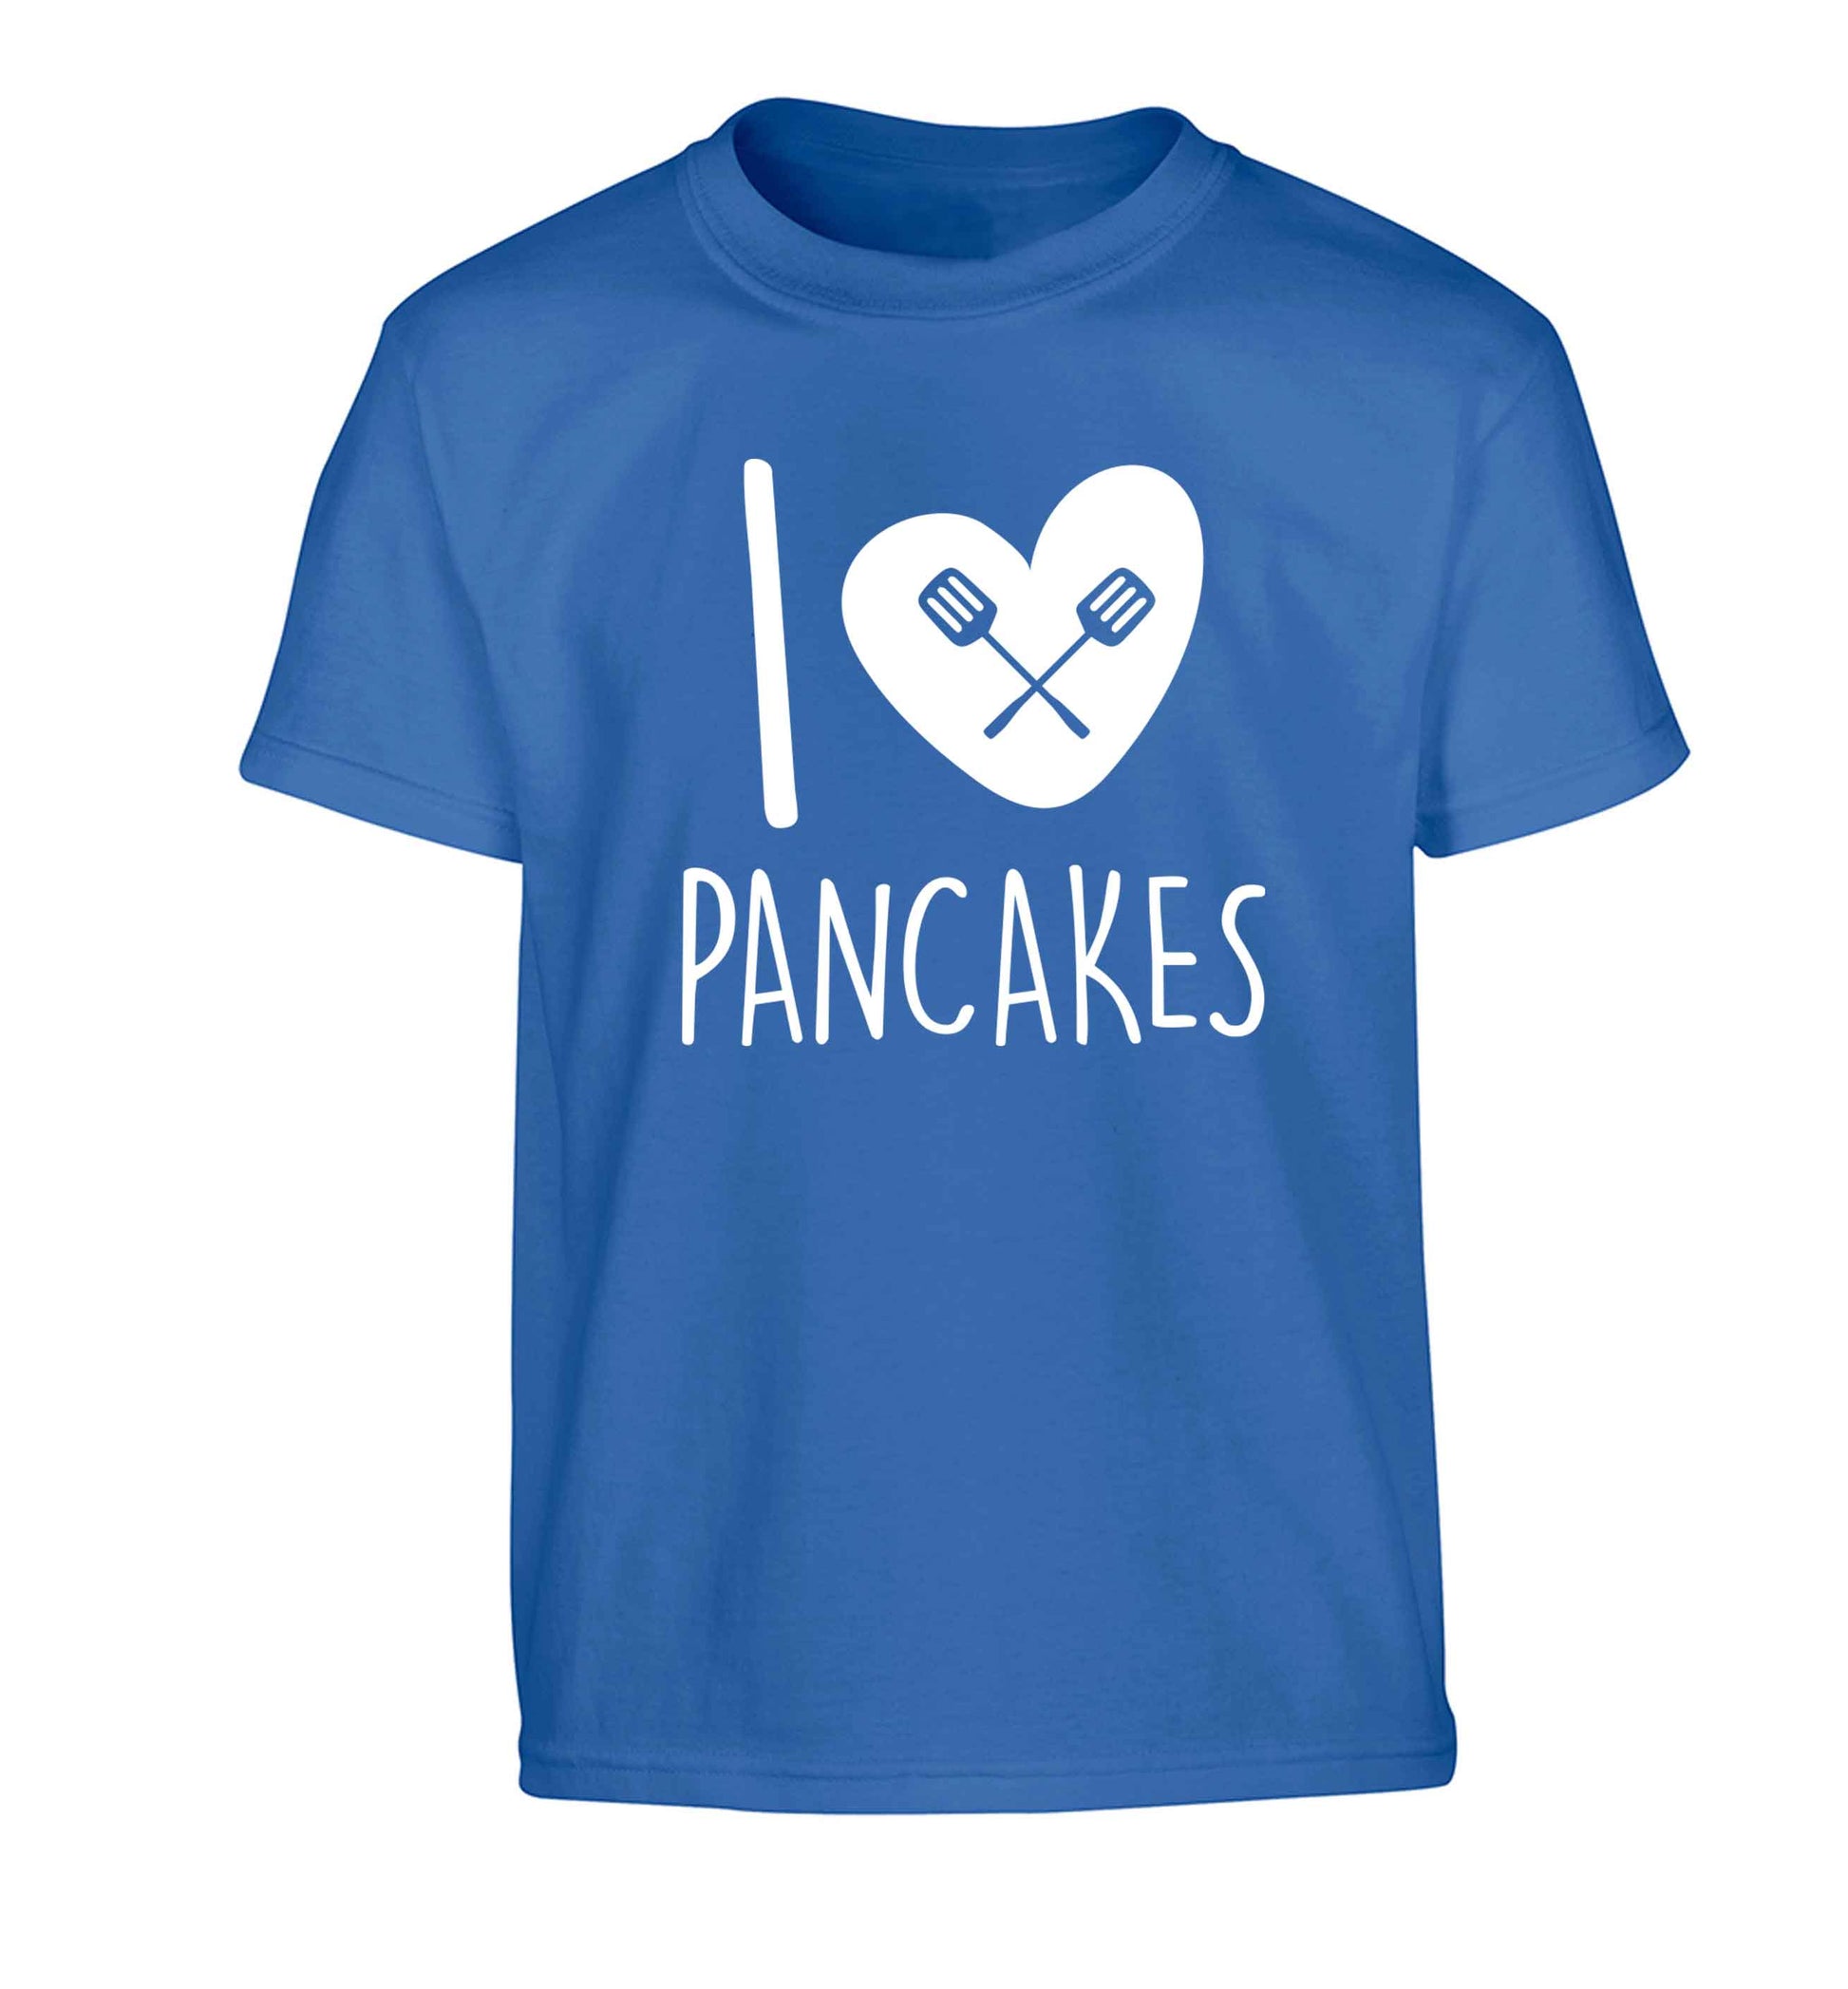 I love pancakes Children's blue Tshirt 12-13 Years